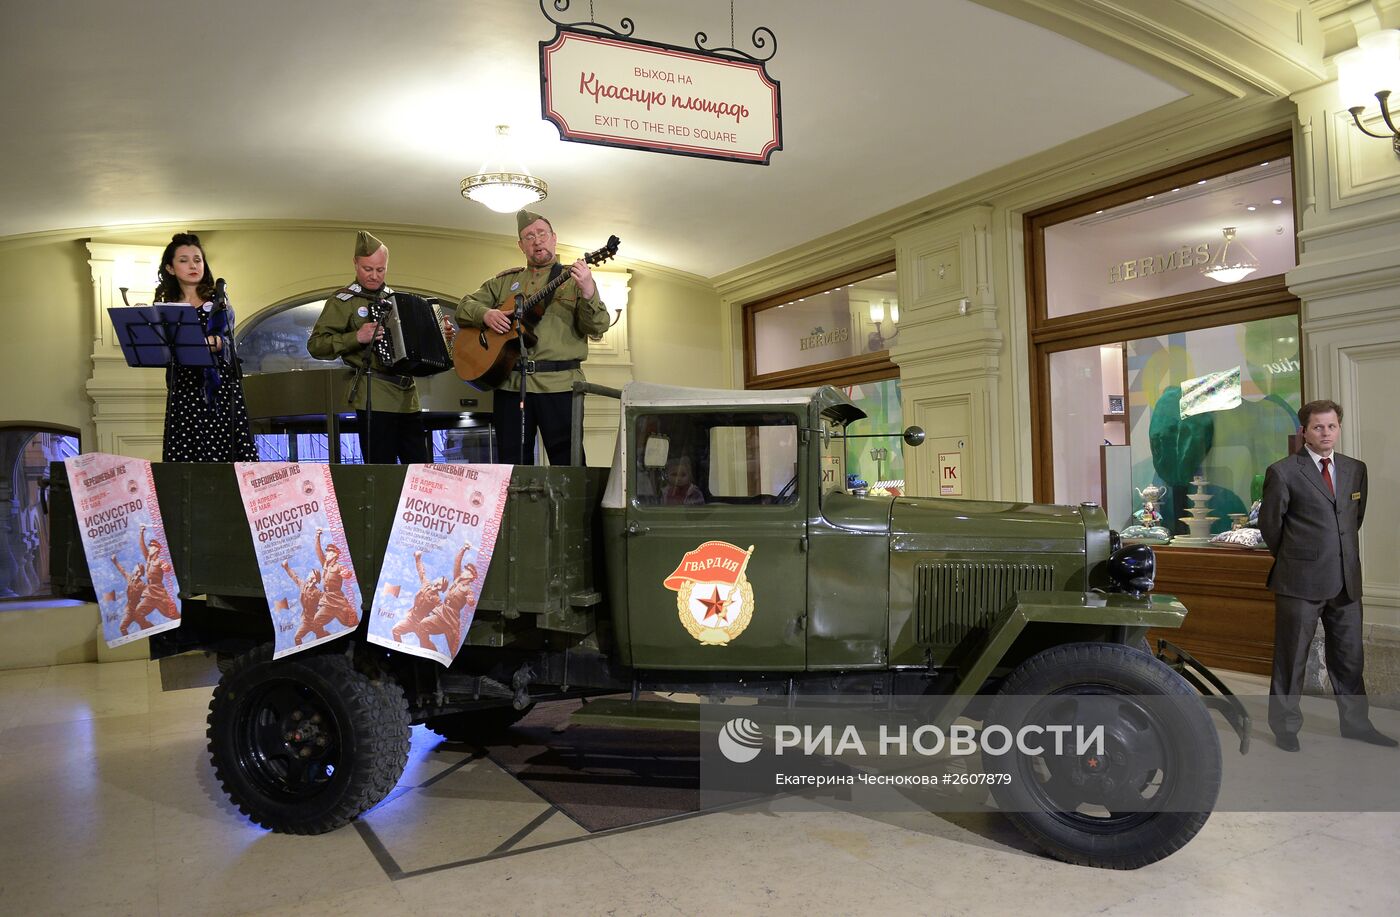 Открытие выставки "Искусство Фронту" в честь 70-летия Победы